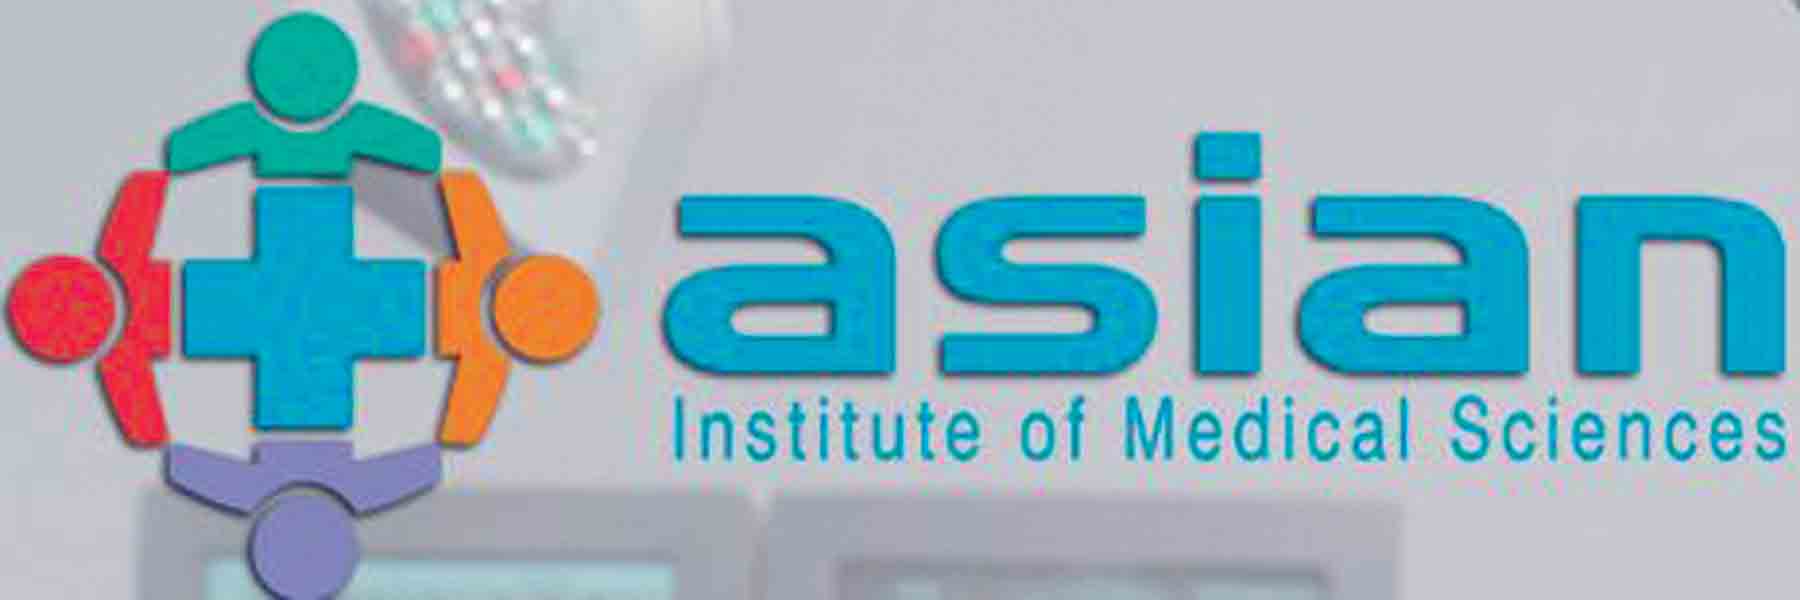 Asian Hospital Logo